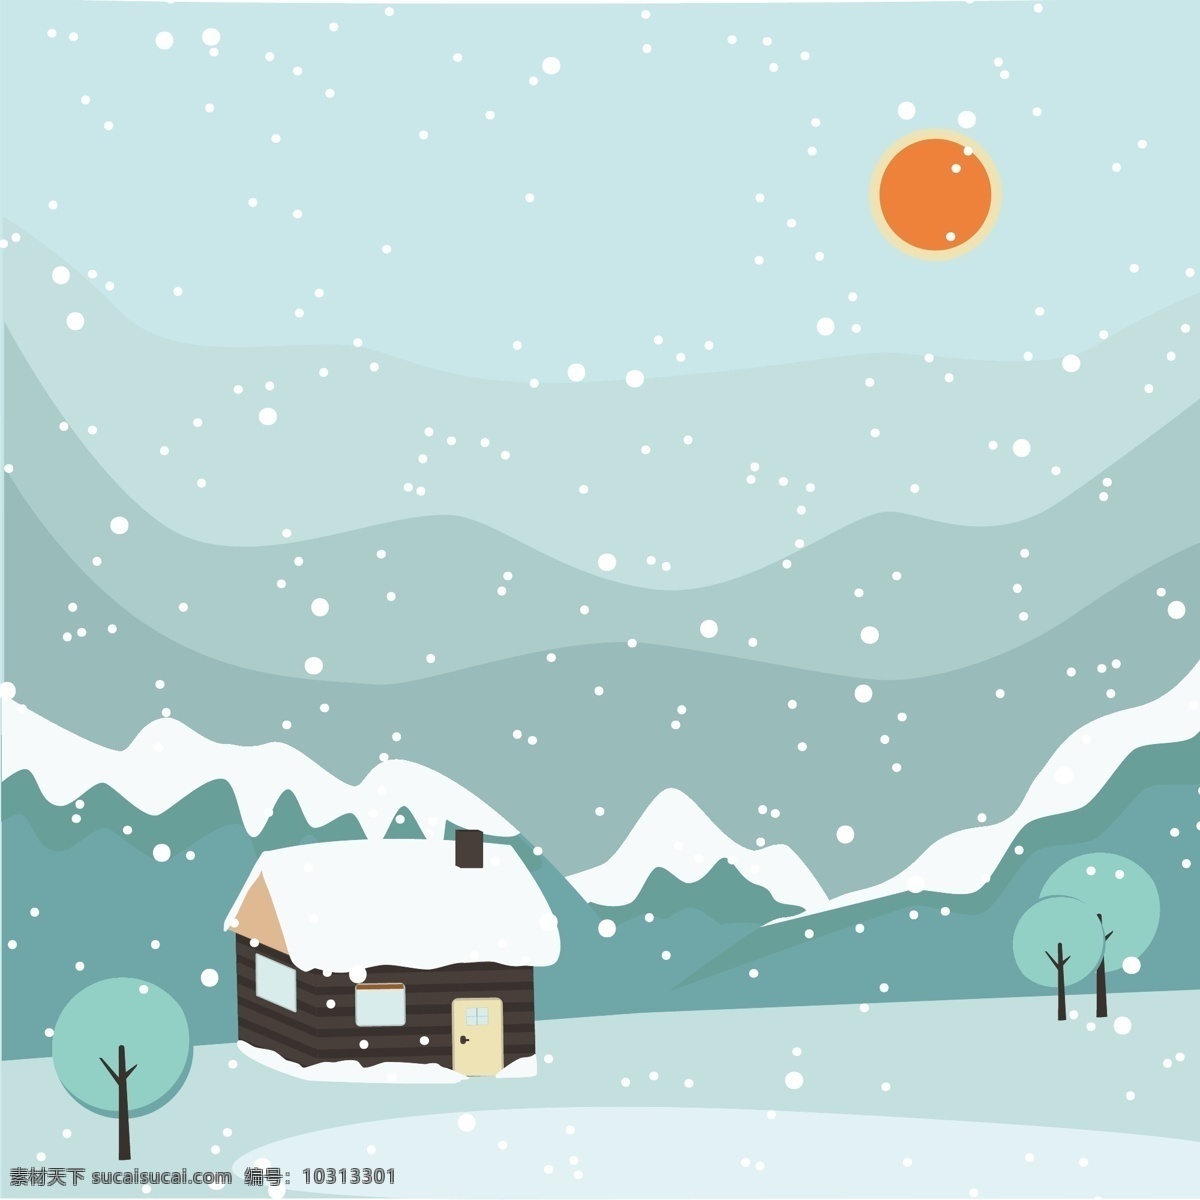 冬日 雪景 卡通 手绘 插画 矢量 冬季 清新 节气 山脉 插图 元素